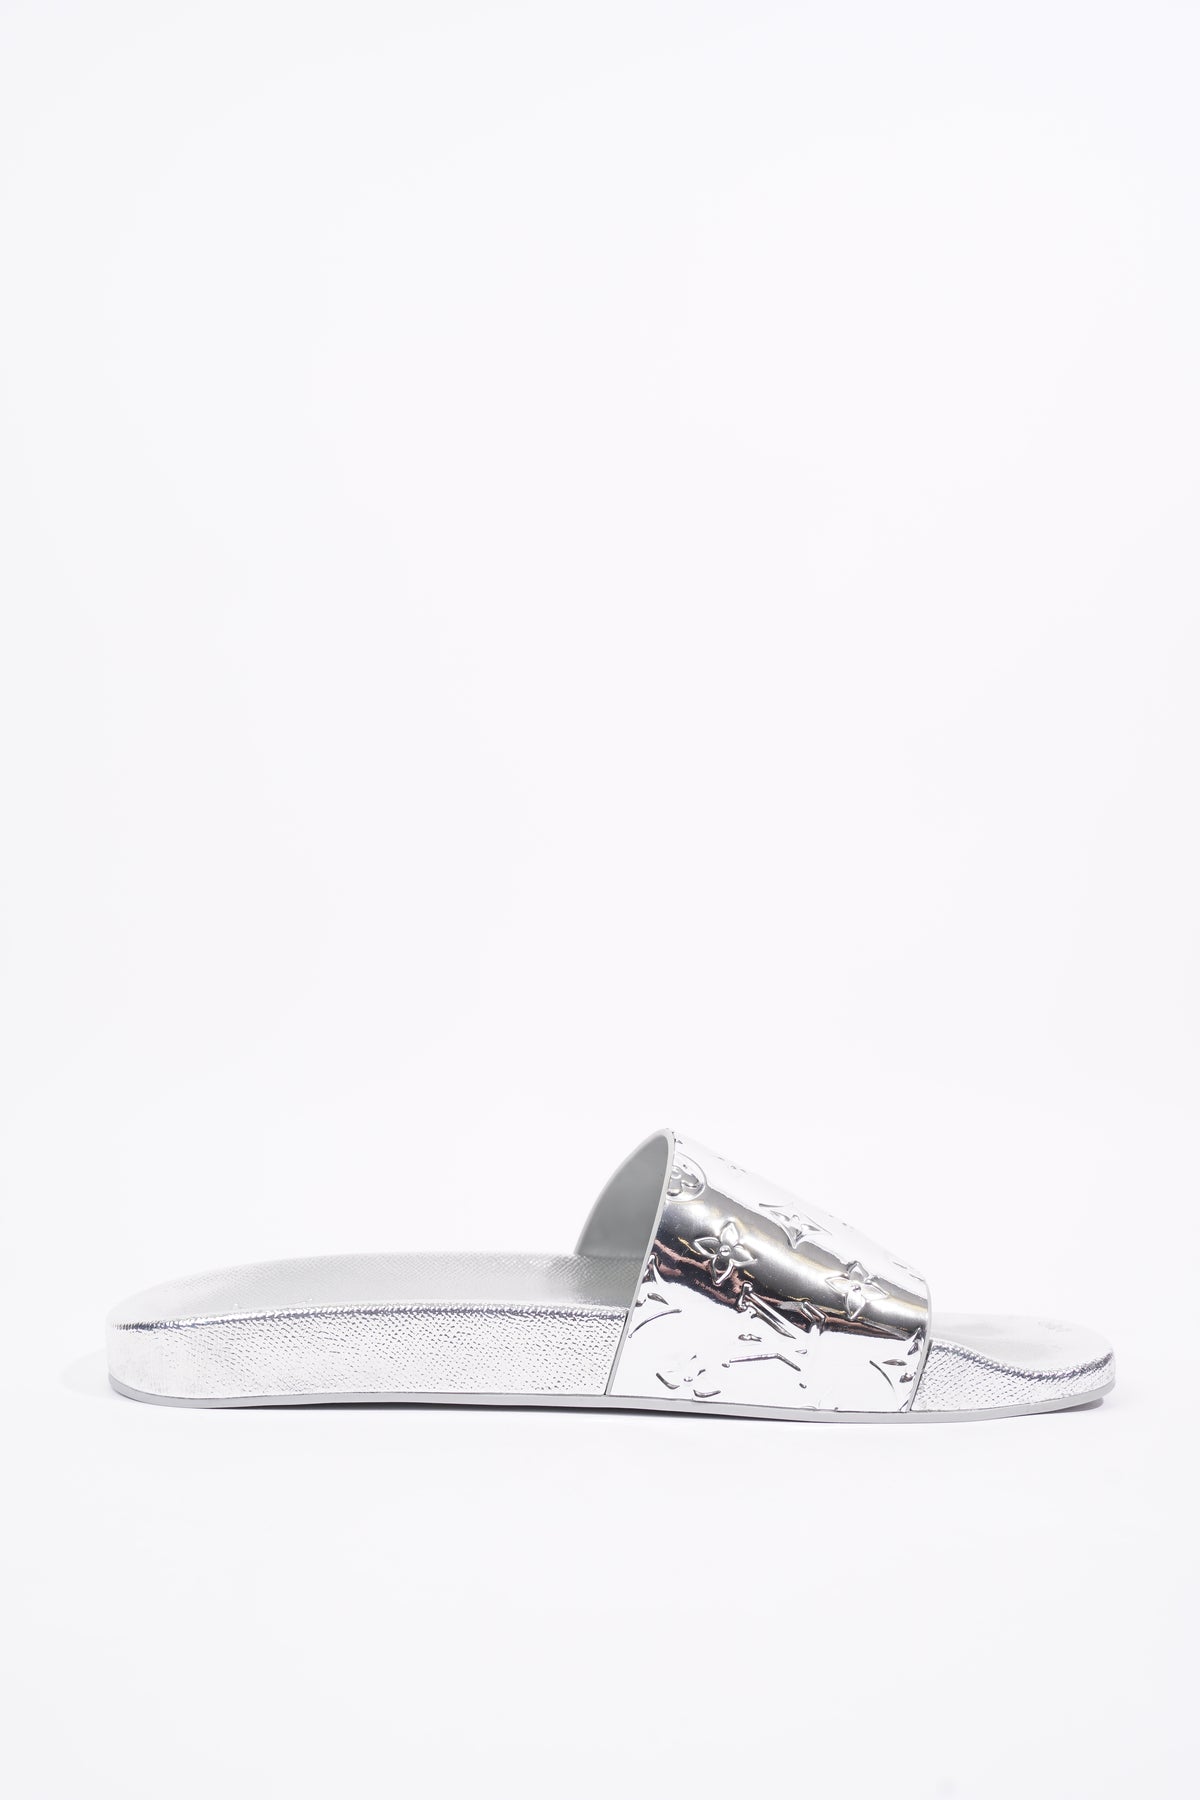 Men's Louis Vuitton Slides & Sandals